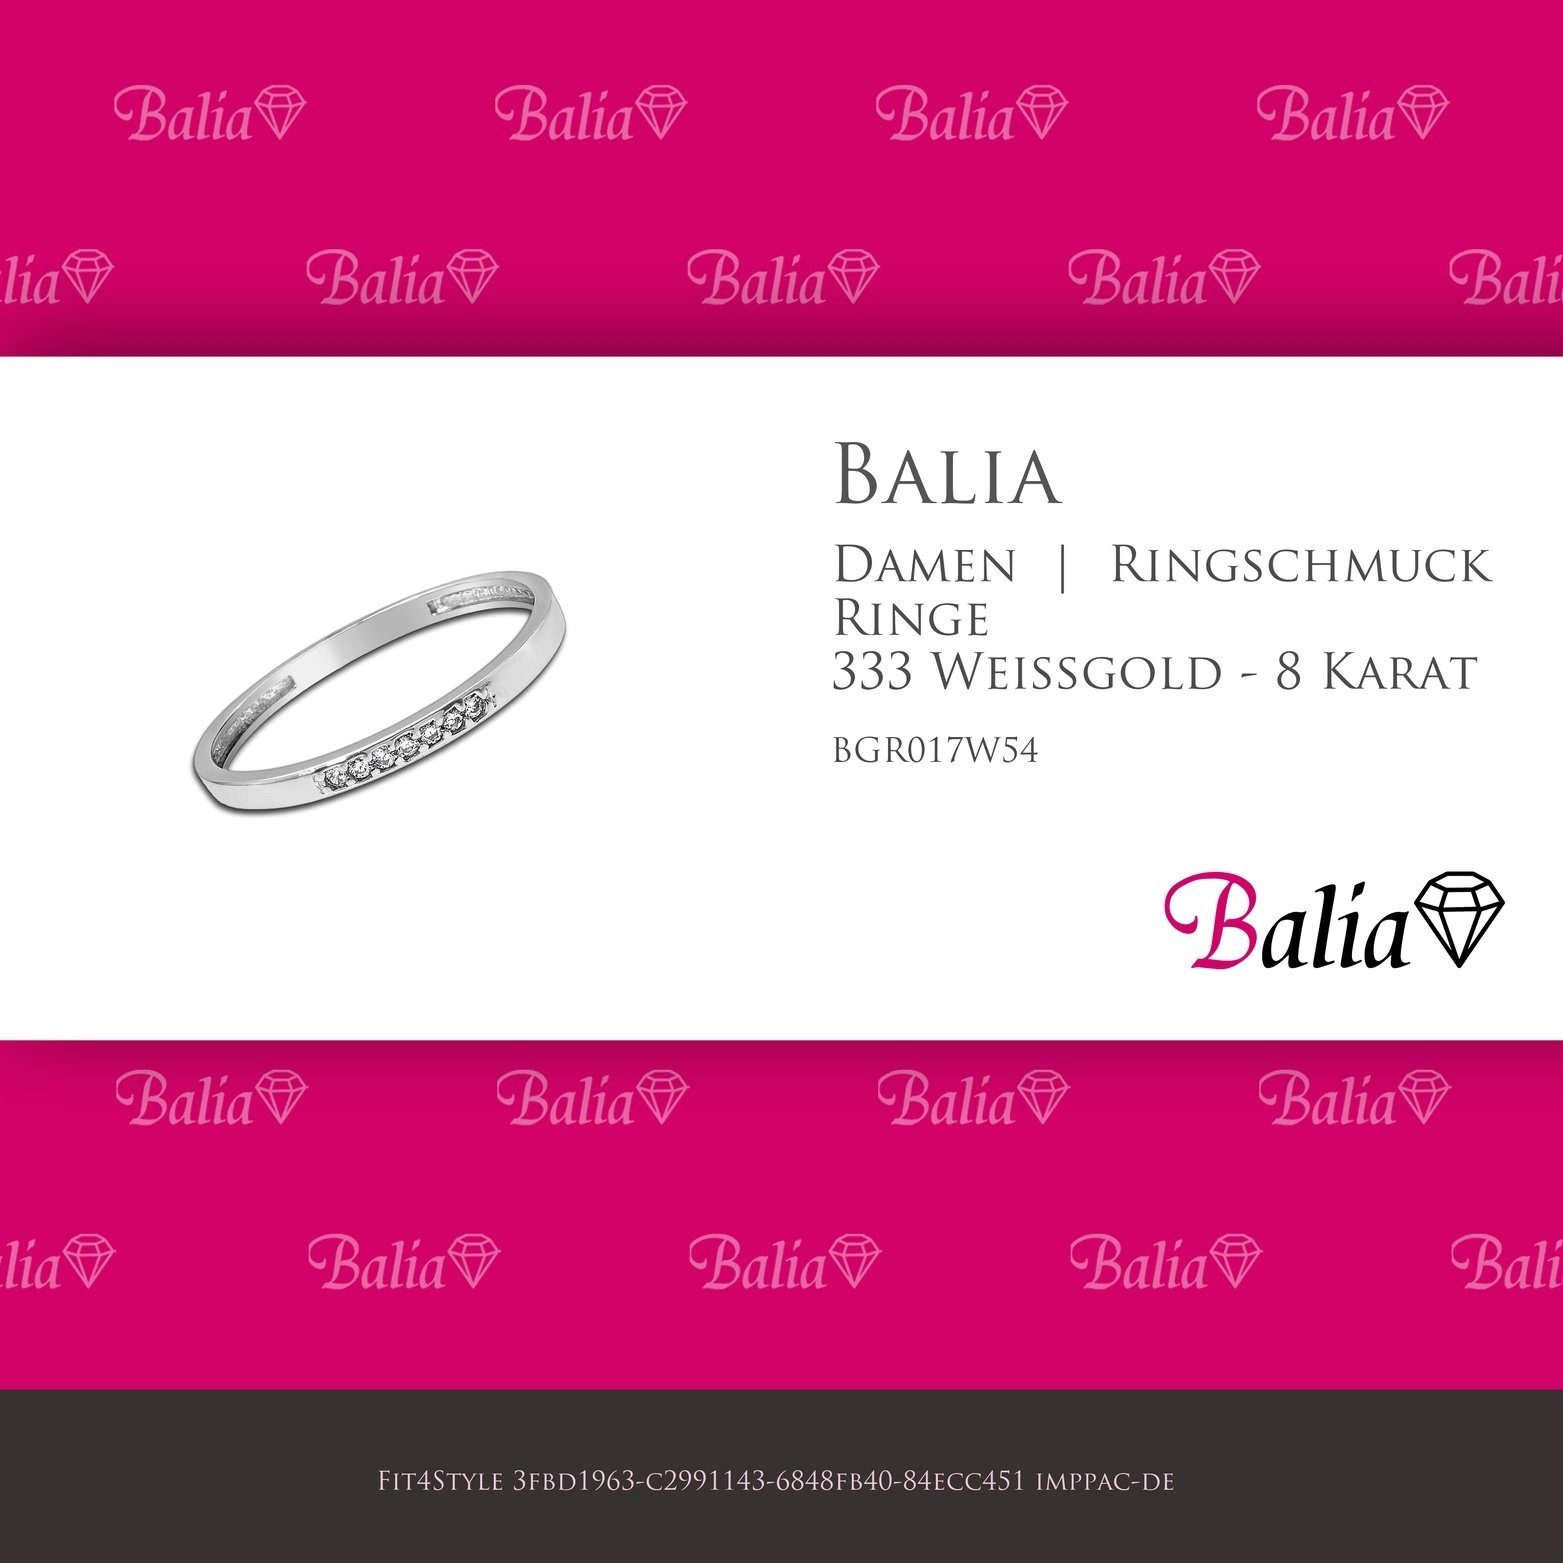 Balia Goldring Balia - Weißgold 333 Zirkonias Ring Damen Fingerring 54 Blatt Größe (17,2), Karat 8 (Fingerring), weißgo 333 Weißgold (7